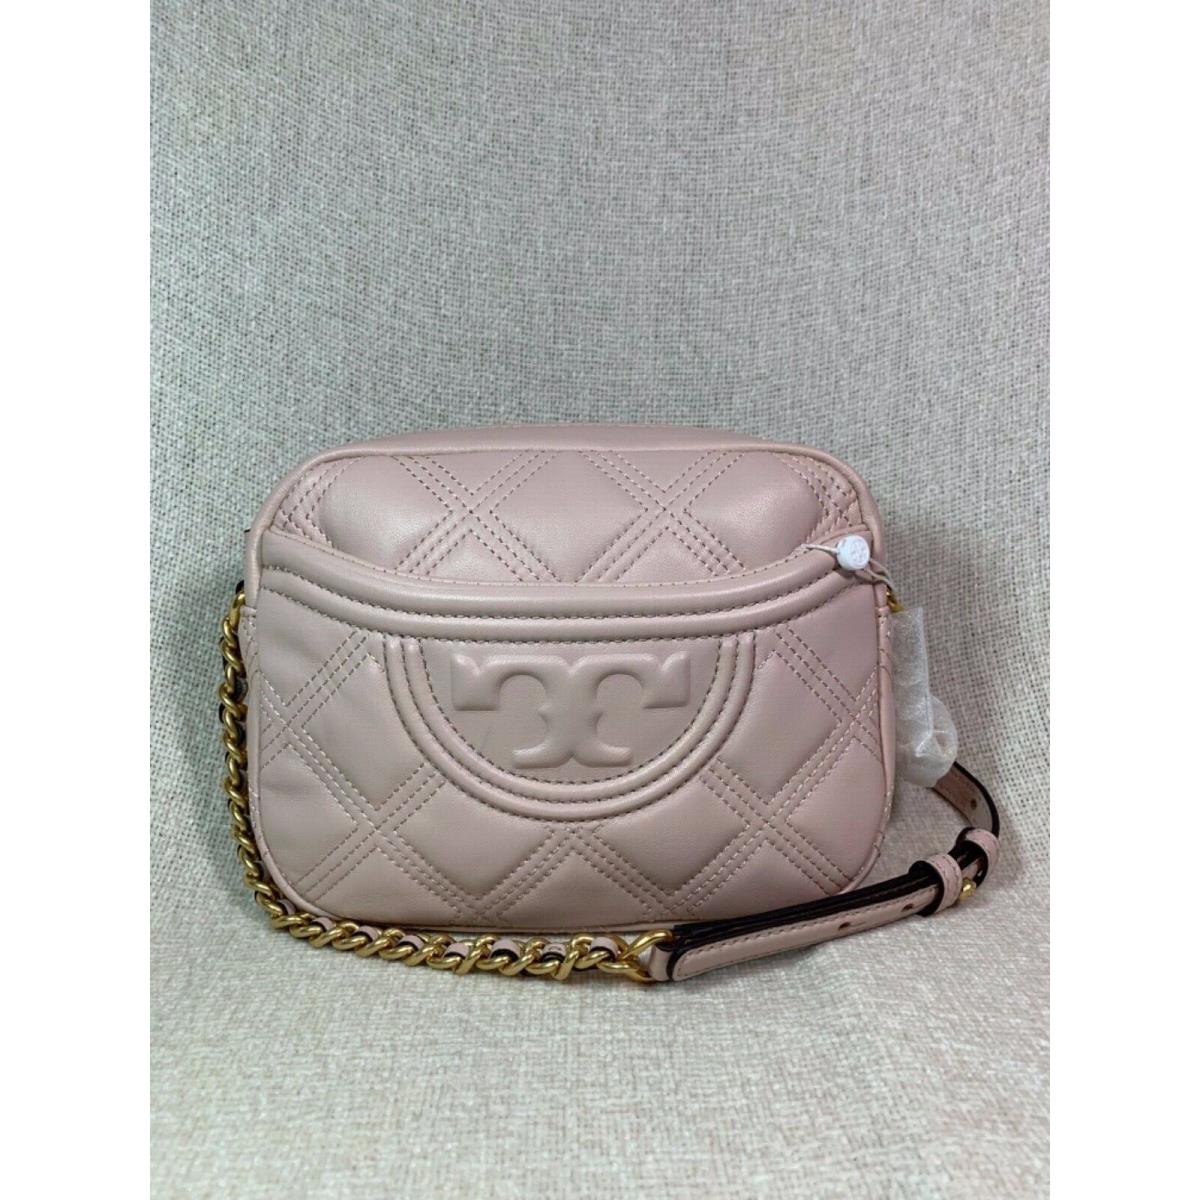 Tory Burch Shell Pink Fleming Soft Small Camera Bag - Tory Burch bag -  192485412932 | Fash Brands